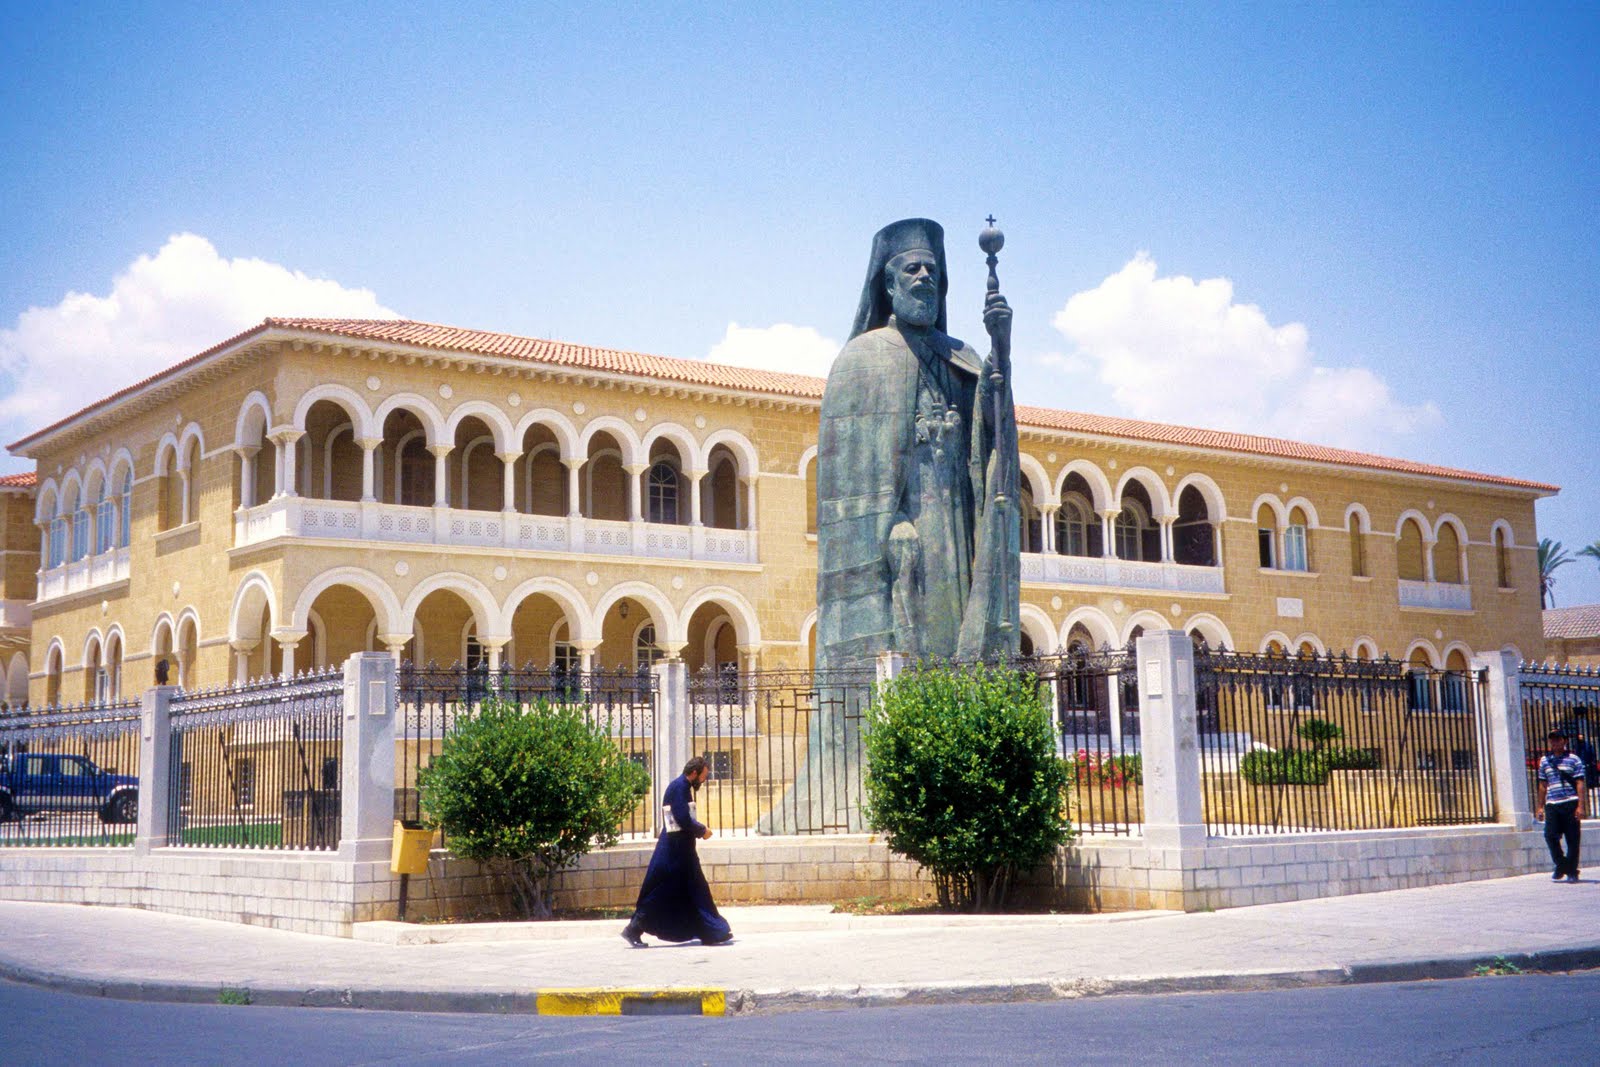 Η Ιερά Αρχιεπισκοπή Κύπρου ψάχνει άτομο για τη διαχείριση των ακινήτων της